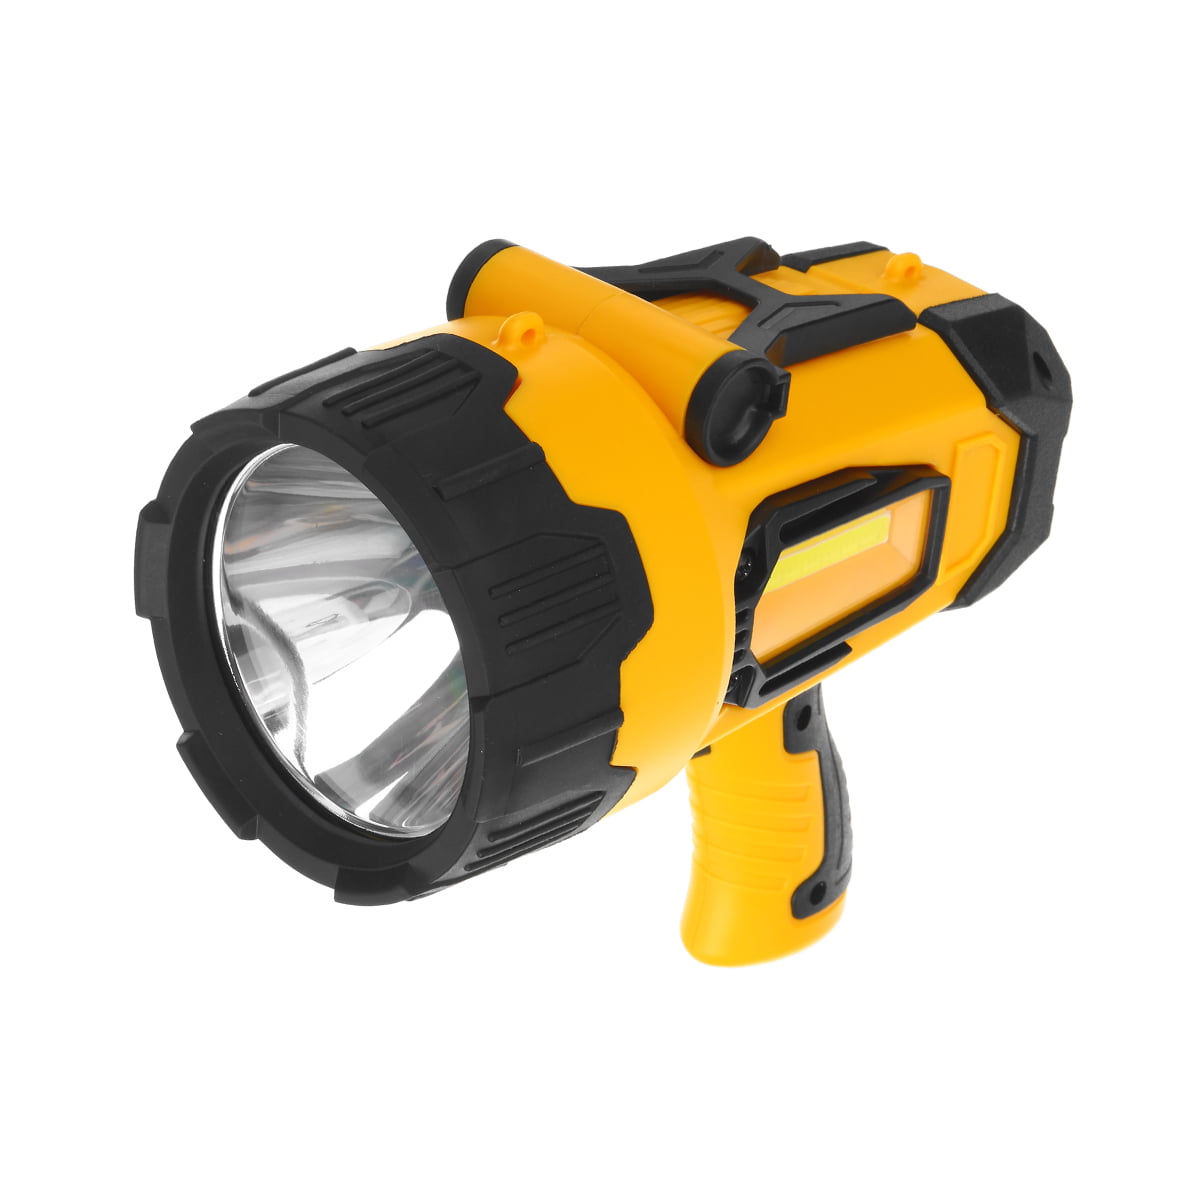 Goodsmann 6000 Lumen LED Spotlight Waterproof Rechargeable 